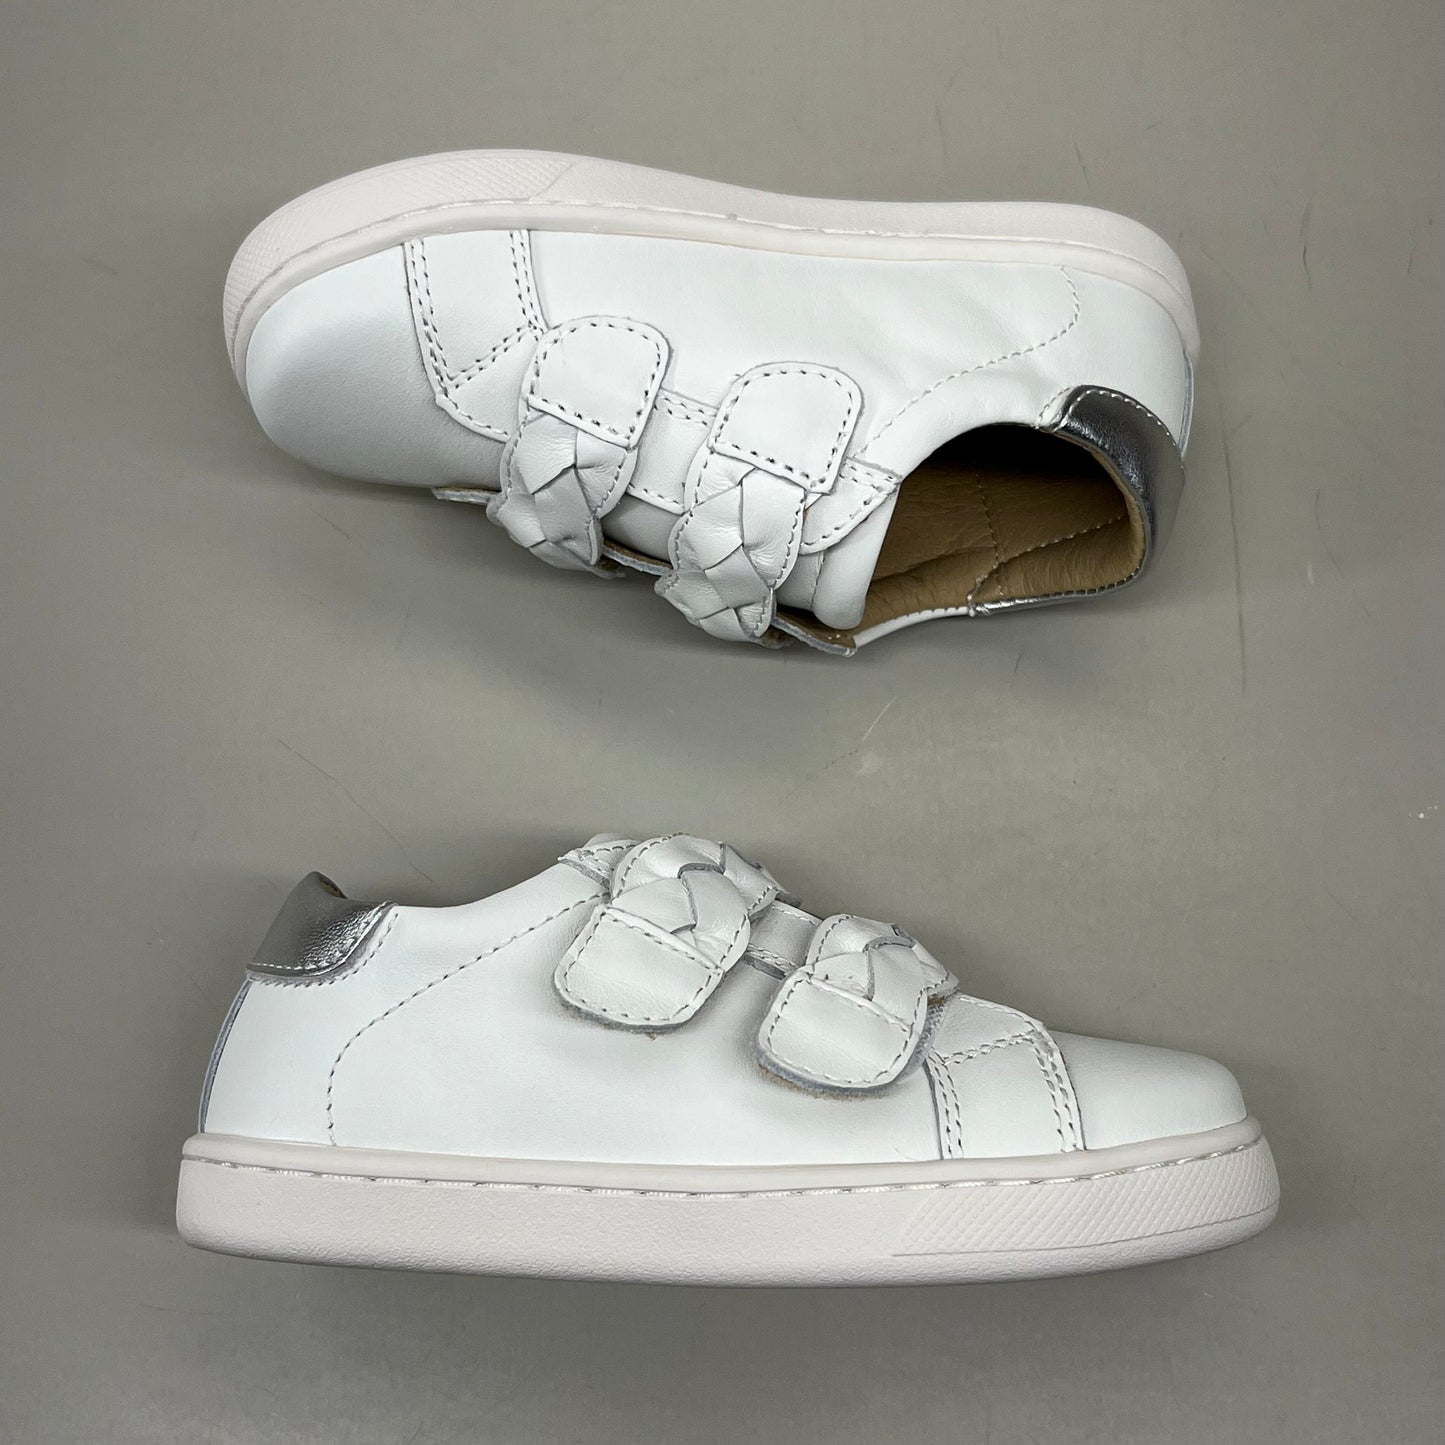 OLD SOLES Kid's Plats Leather Shoe Sz 1 EU 32 Snow / Silver #6134